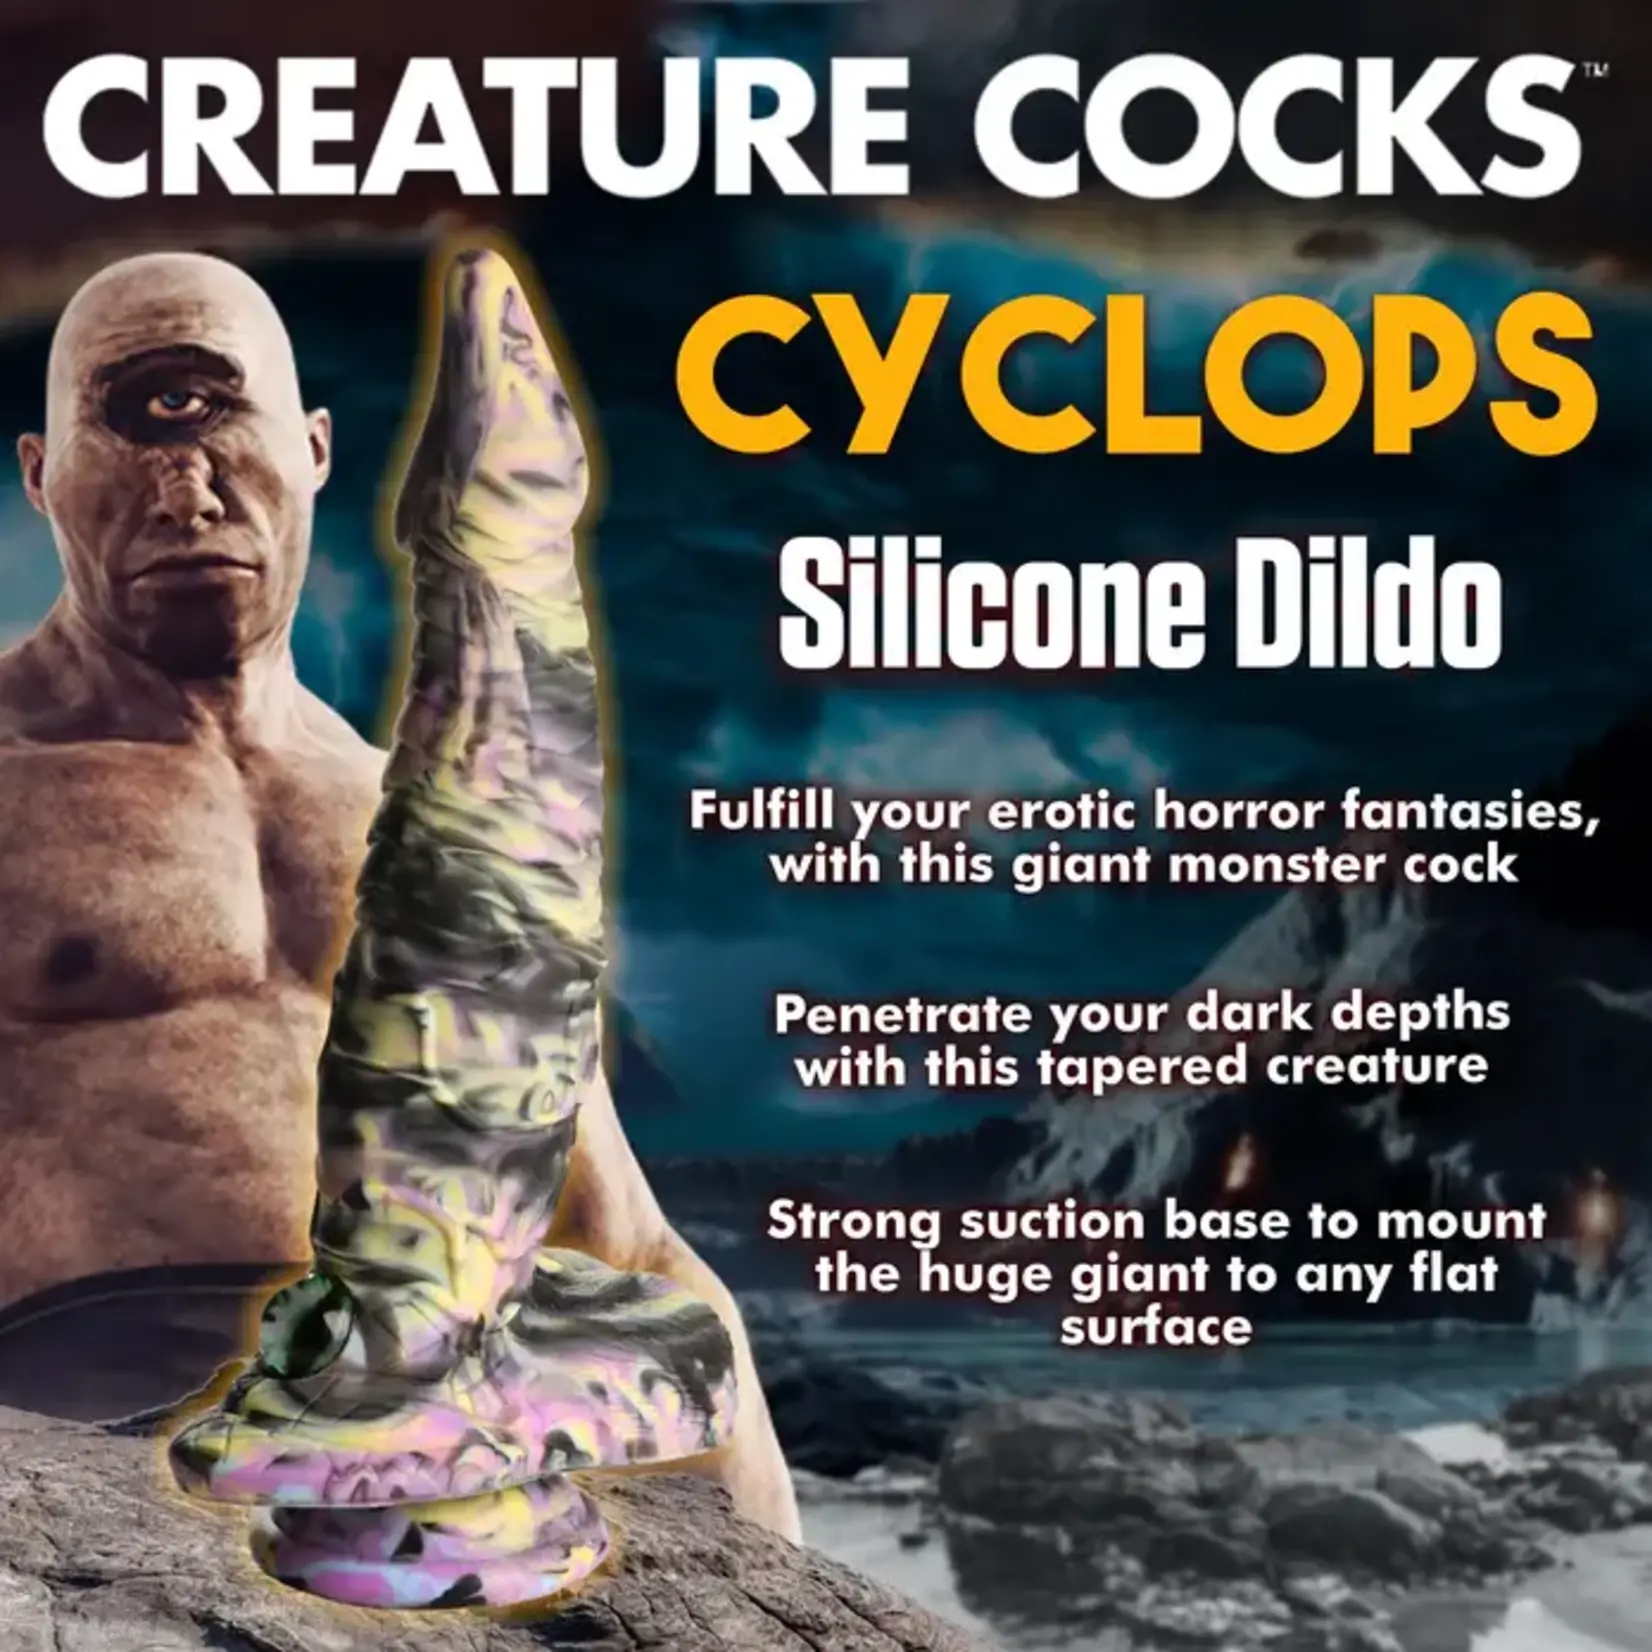 Creature Cocks Cyclops Monster Silicone Dildo - Multicolor